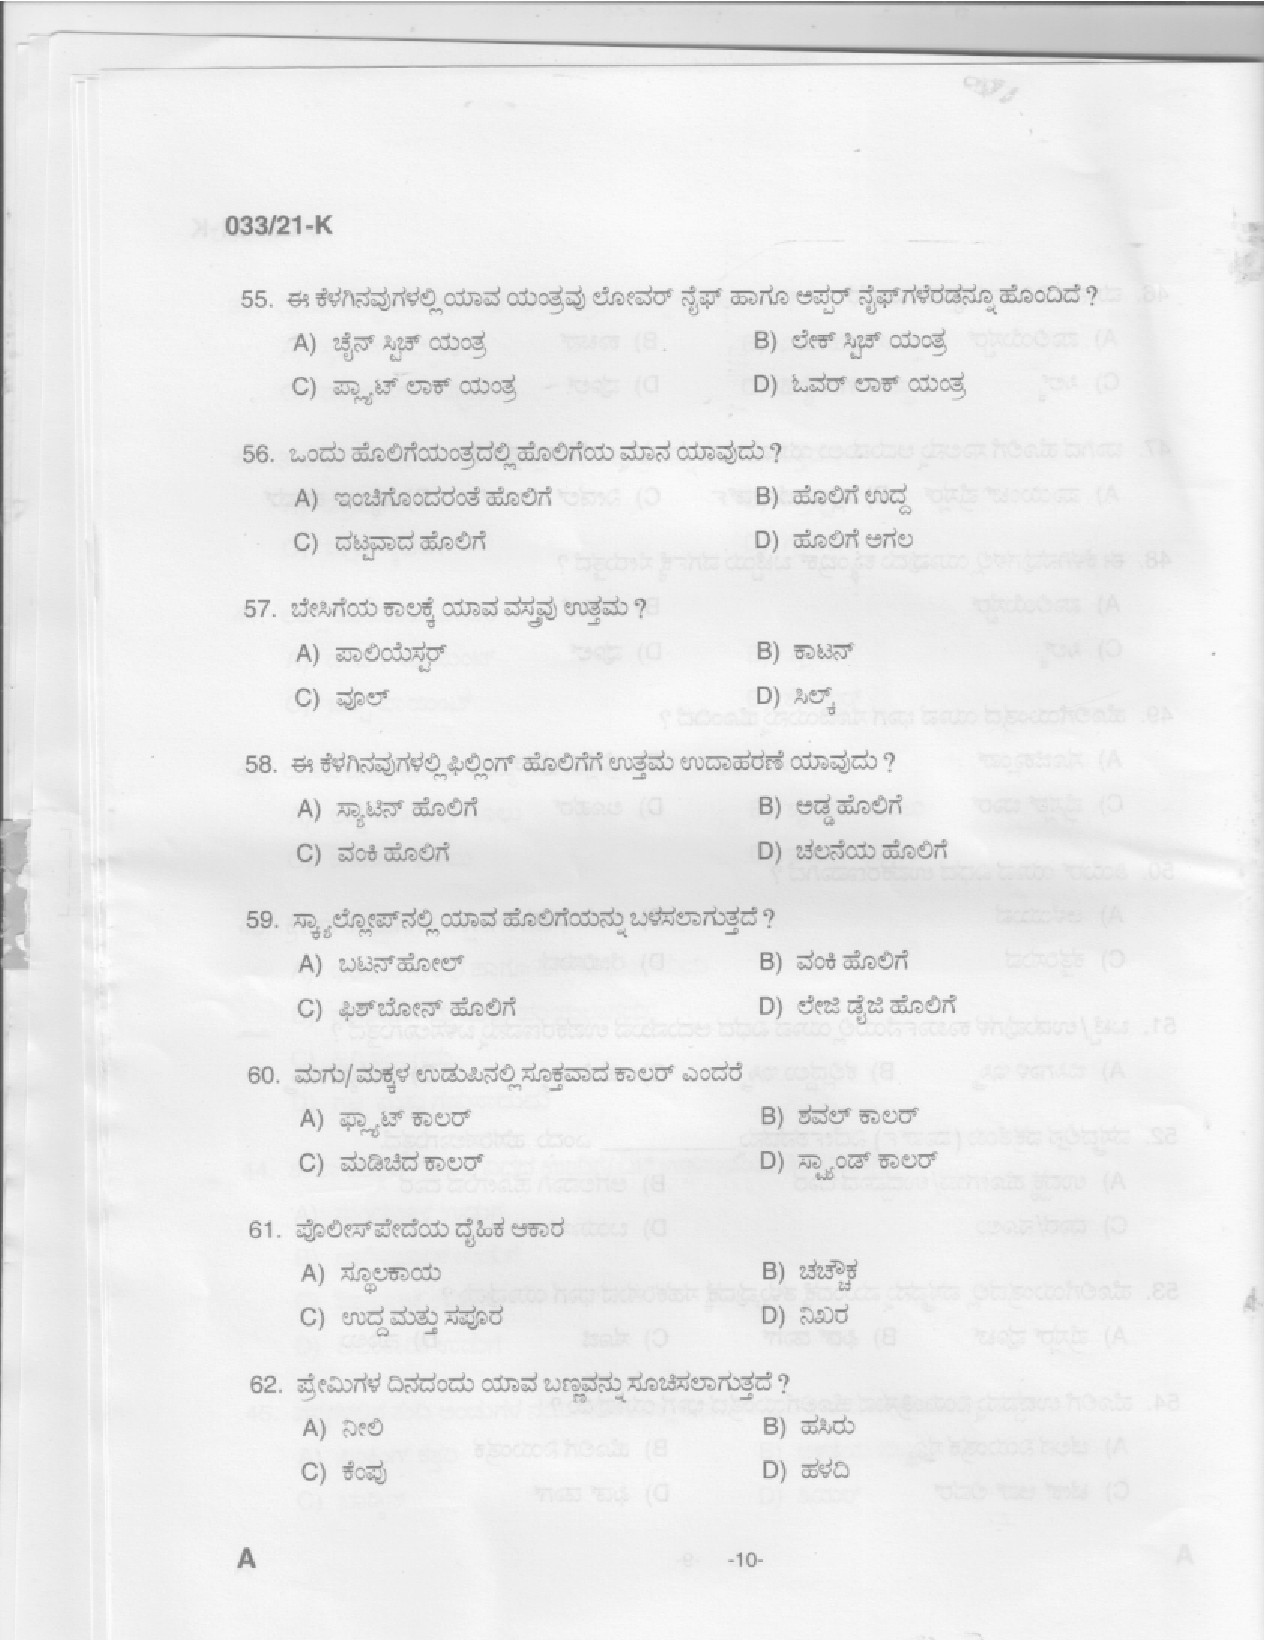 KPSC Sewing Teacher High School Kannada Exam 2021 Code 0332021 K 8